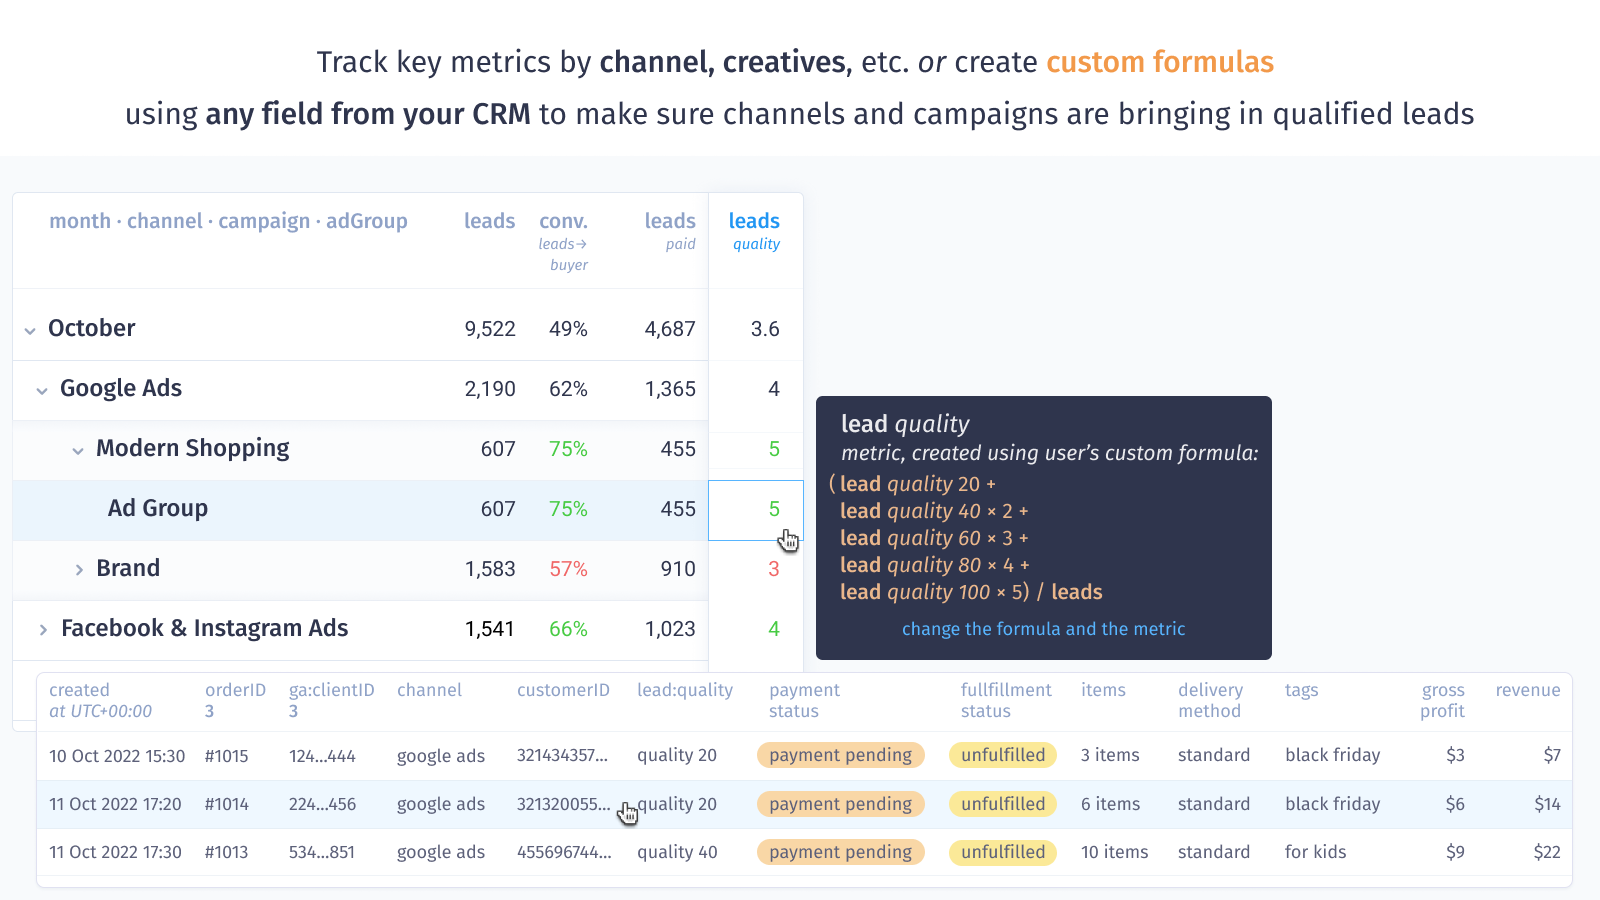 Track key metrics or create custom formulas